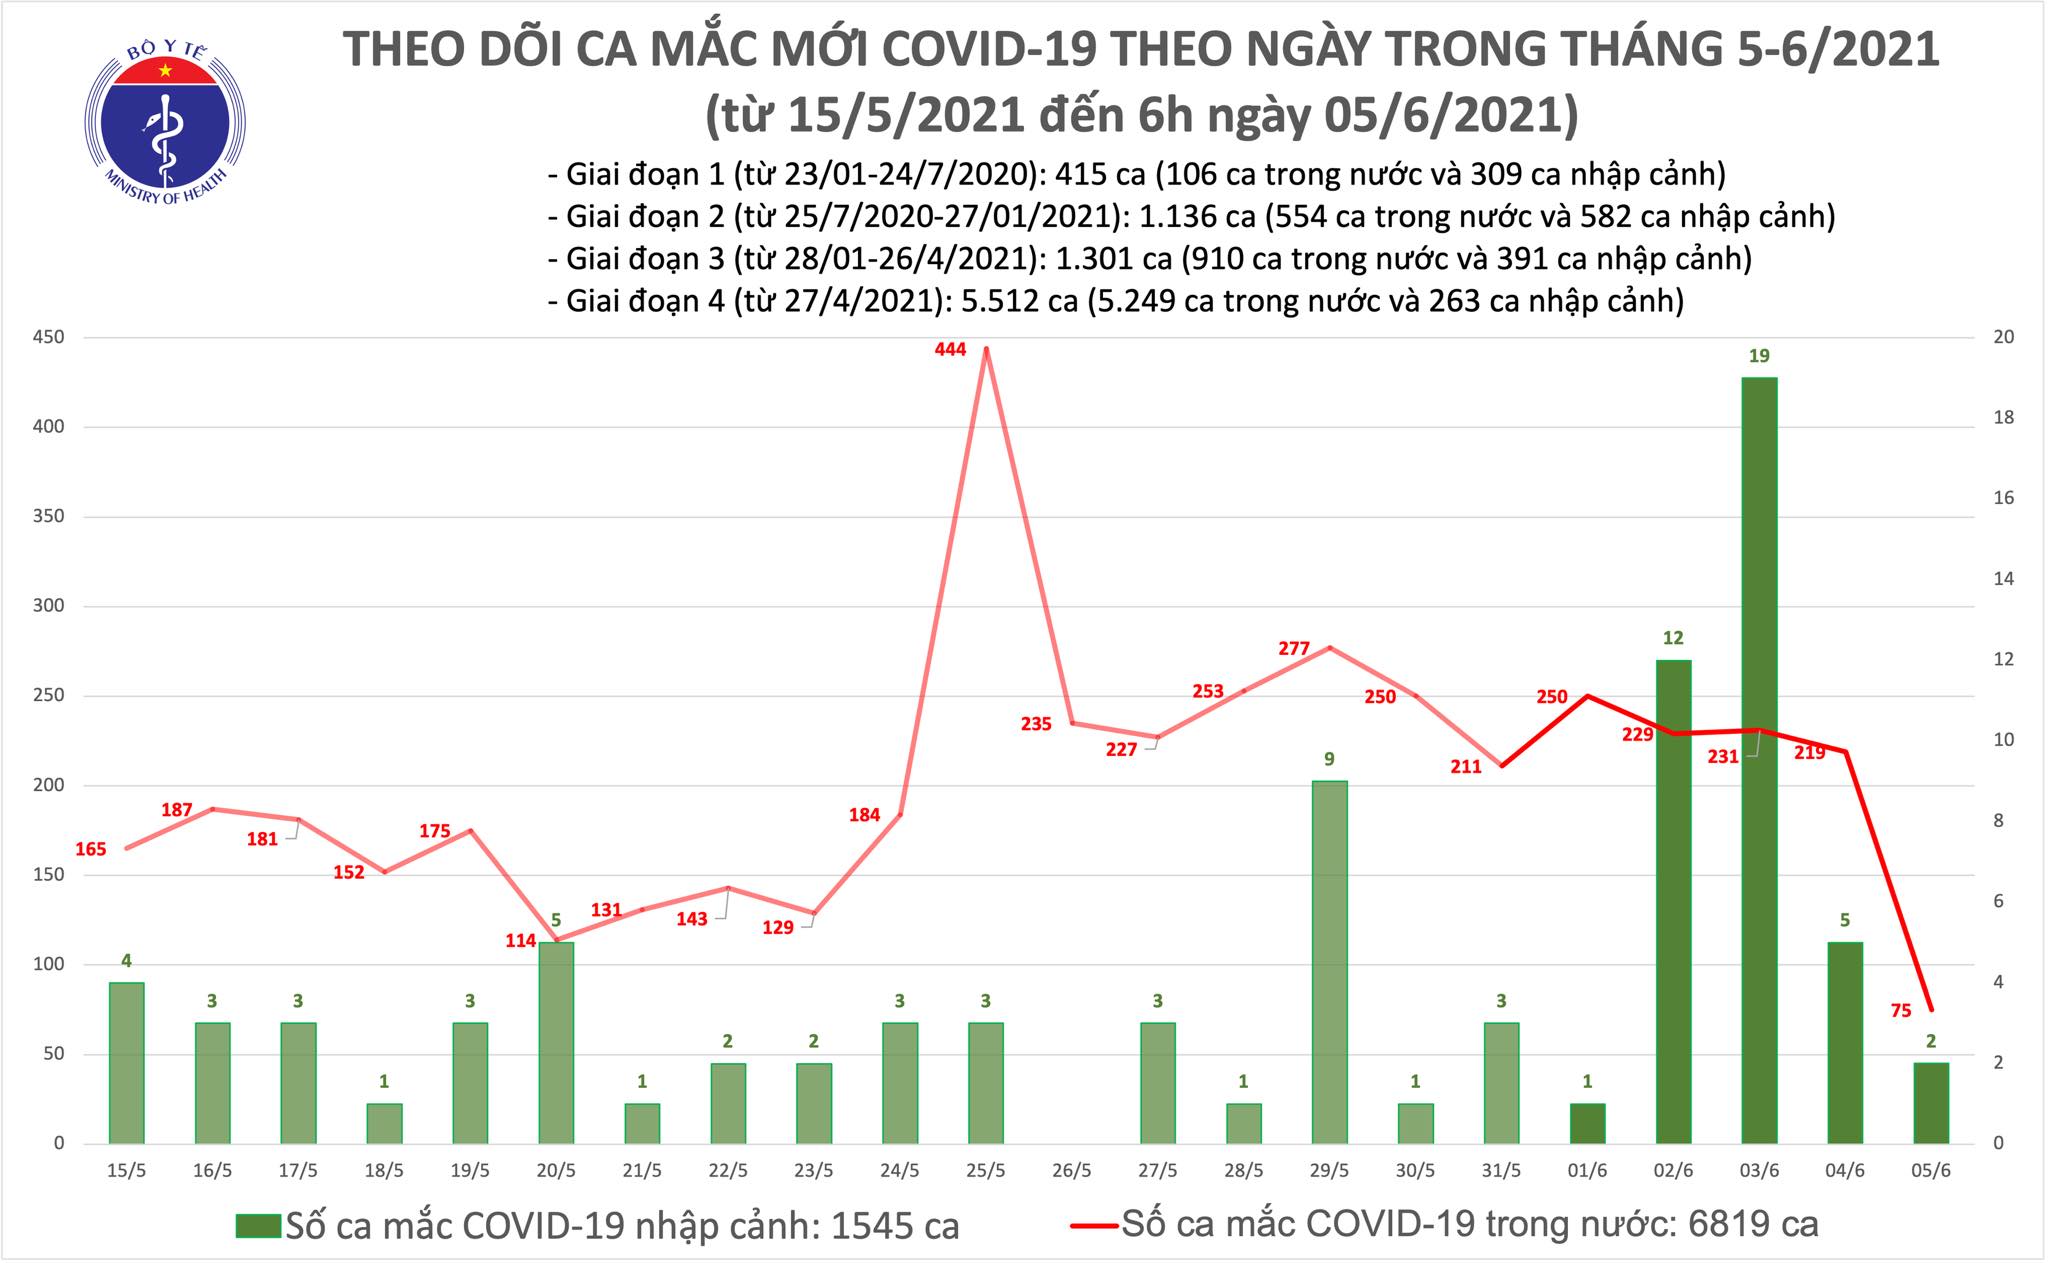 Sáng 5/6: Có 75 ca mắc COVID-19 trong nước, nâng tổng số bệnh nhân tại Việt Nam là 8.364